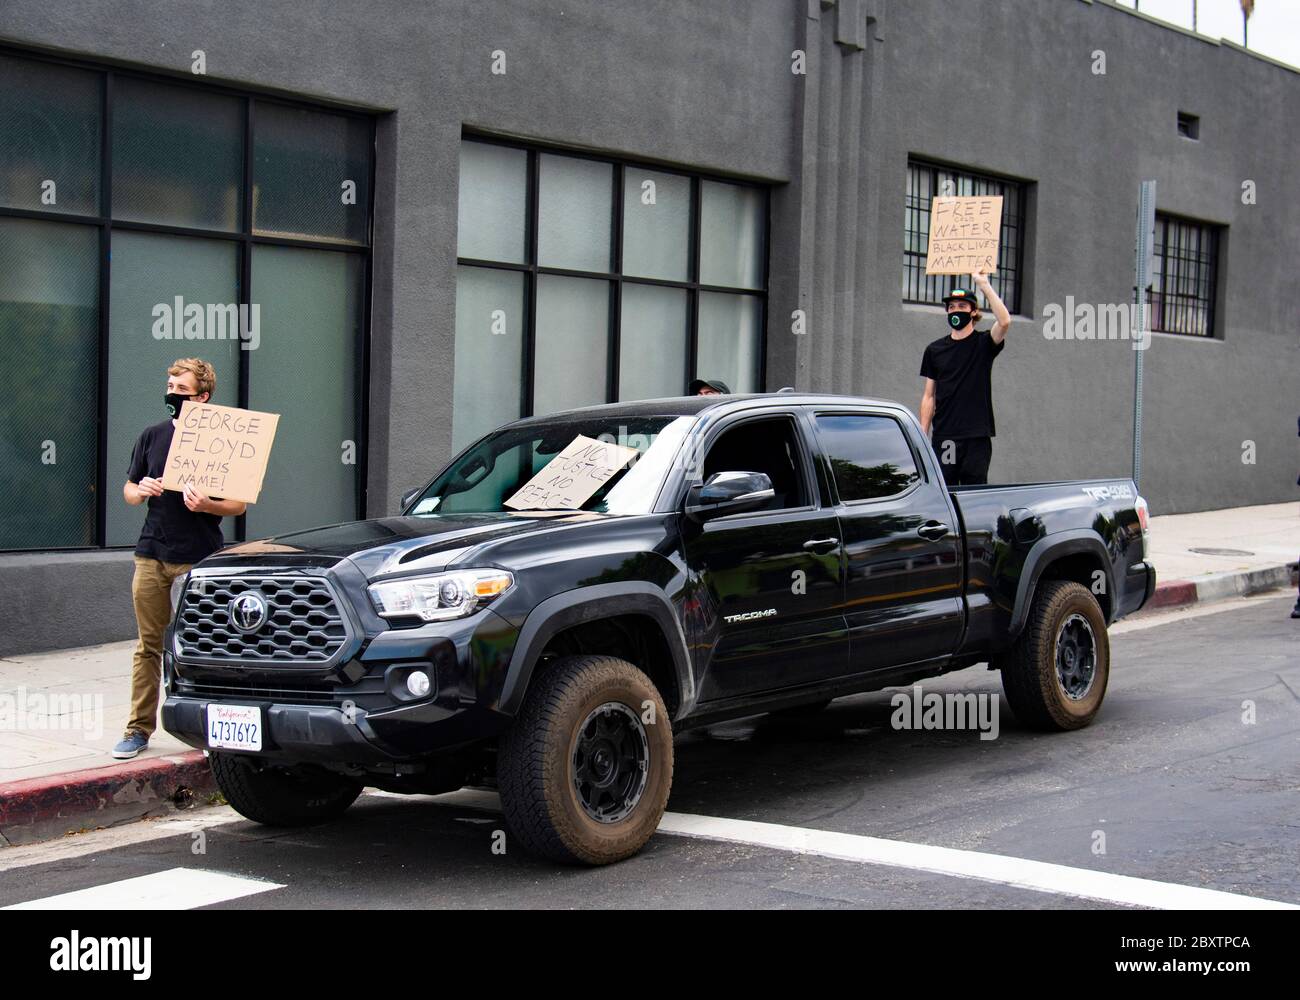 Deux jeunes hommes blancs portent des signes de protestation lors d'une manifestation de George Floyd à Los Angeles, CA Banque D'Images